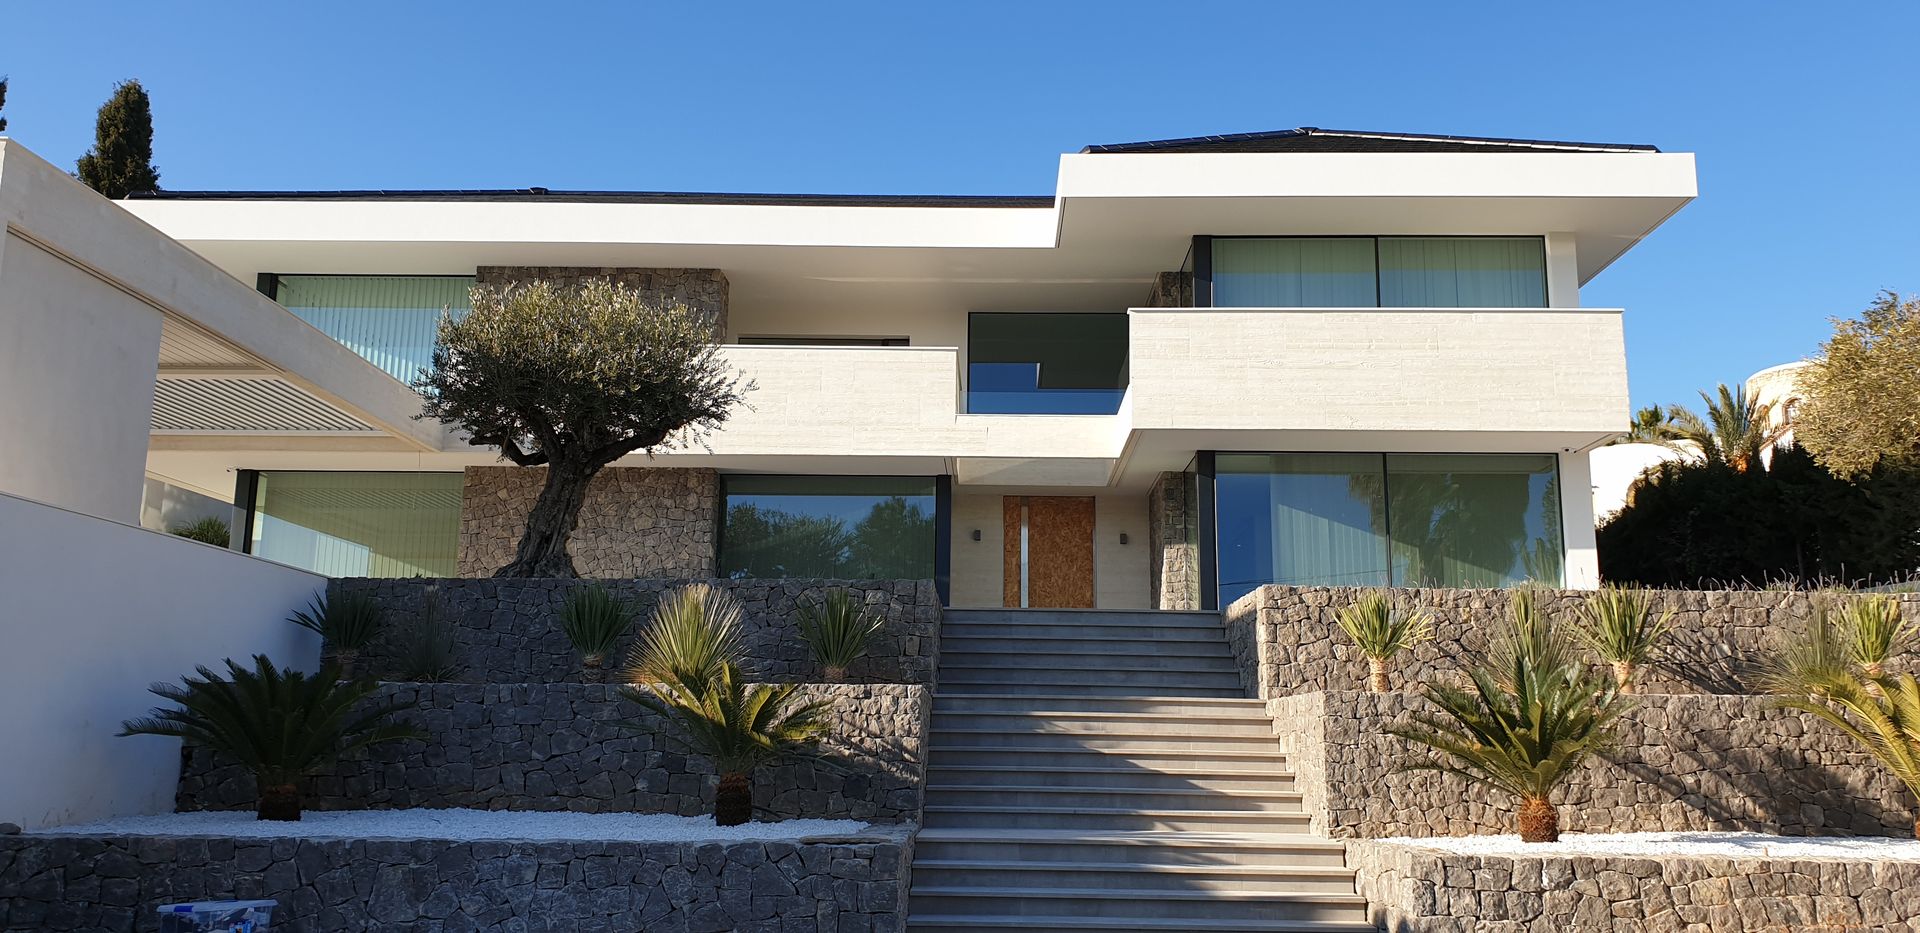 Vivienda aislada frente al mar, Antonio Cilea arquitecto Antonio Cilea arquitecto Villas Concrete